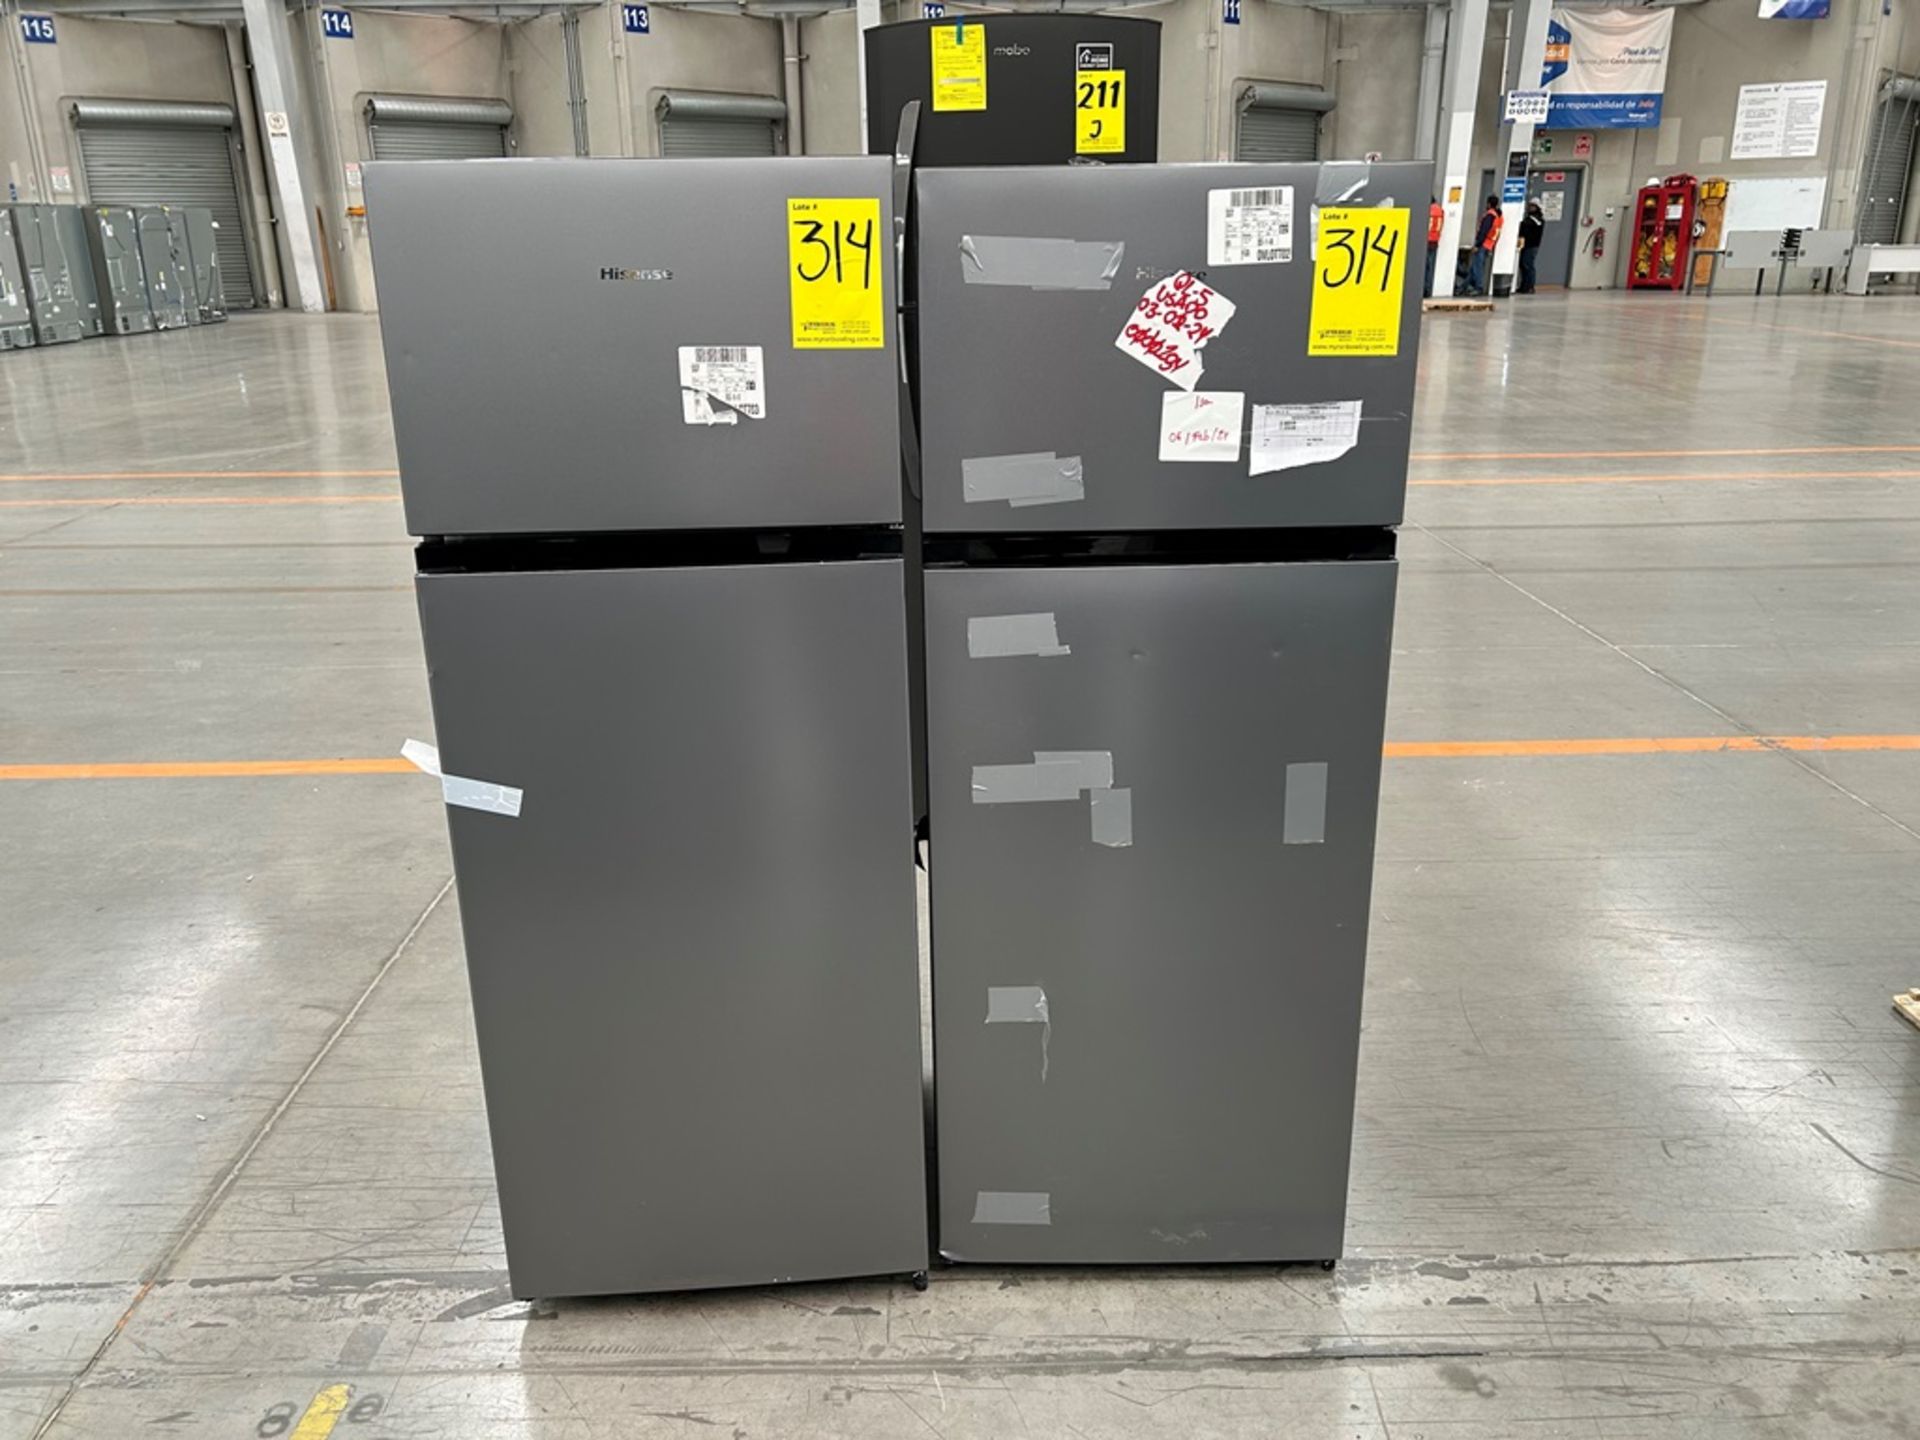 Lote de 2 Refrigeradores, contiene: 1 Refrigerador Marca HISENSE, Modelo RT80D6AGX Serie VP20148, C